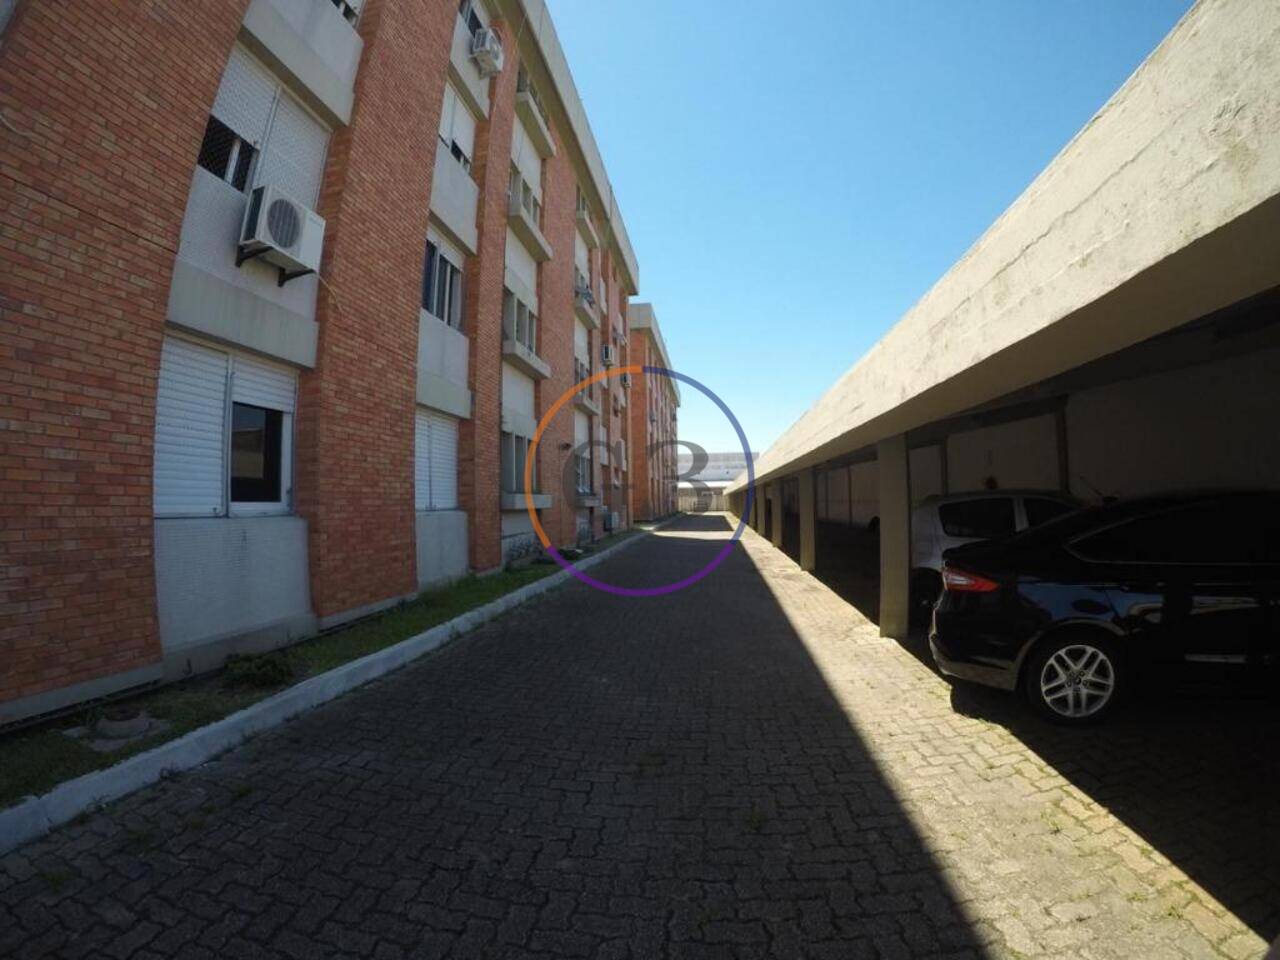 Apartamento Vila Junção, Rio Grande - RS